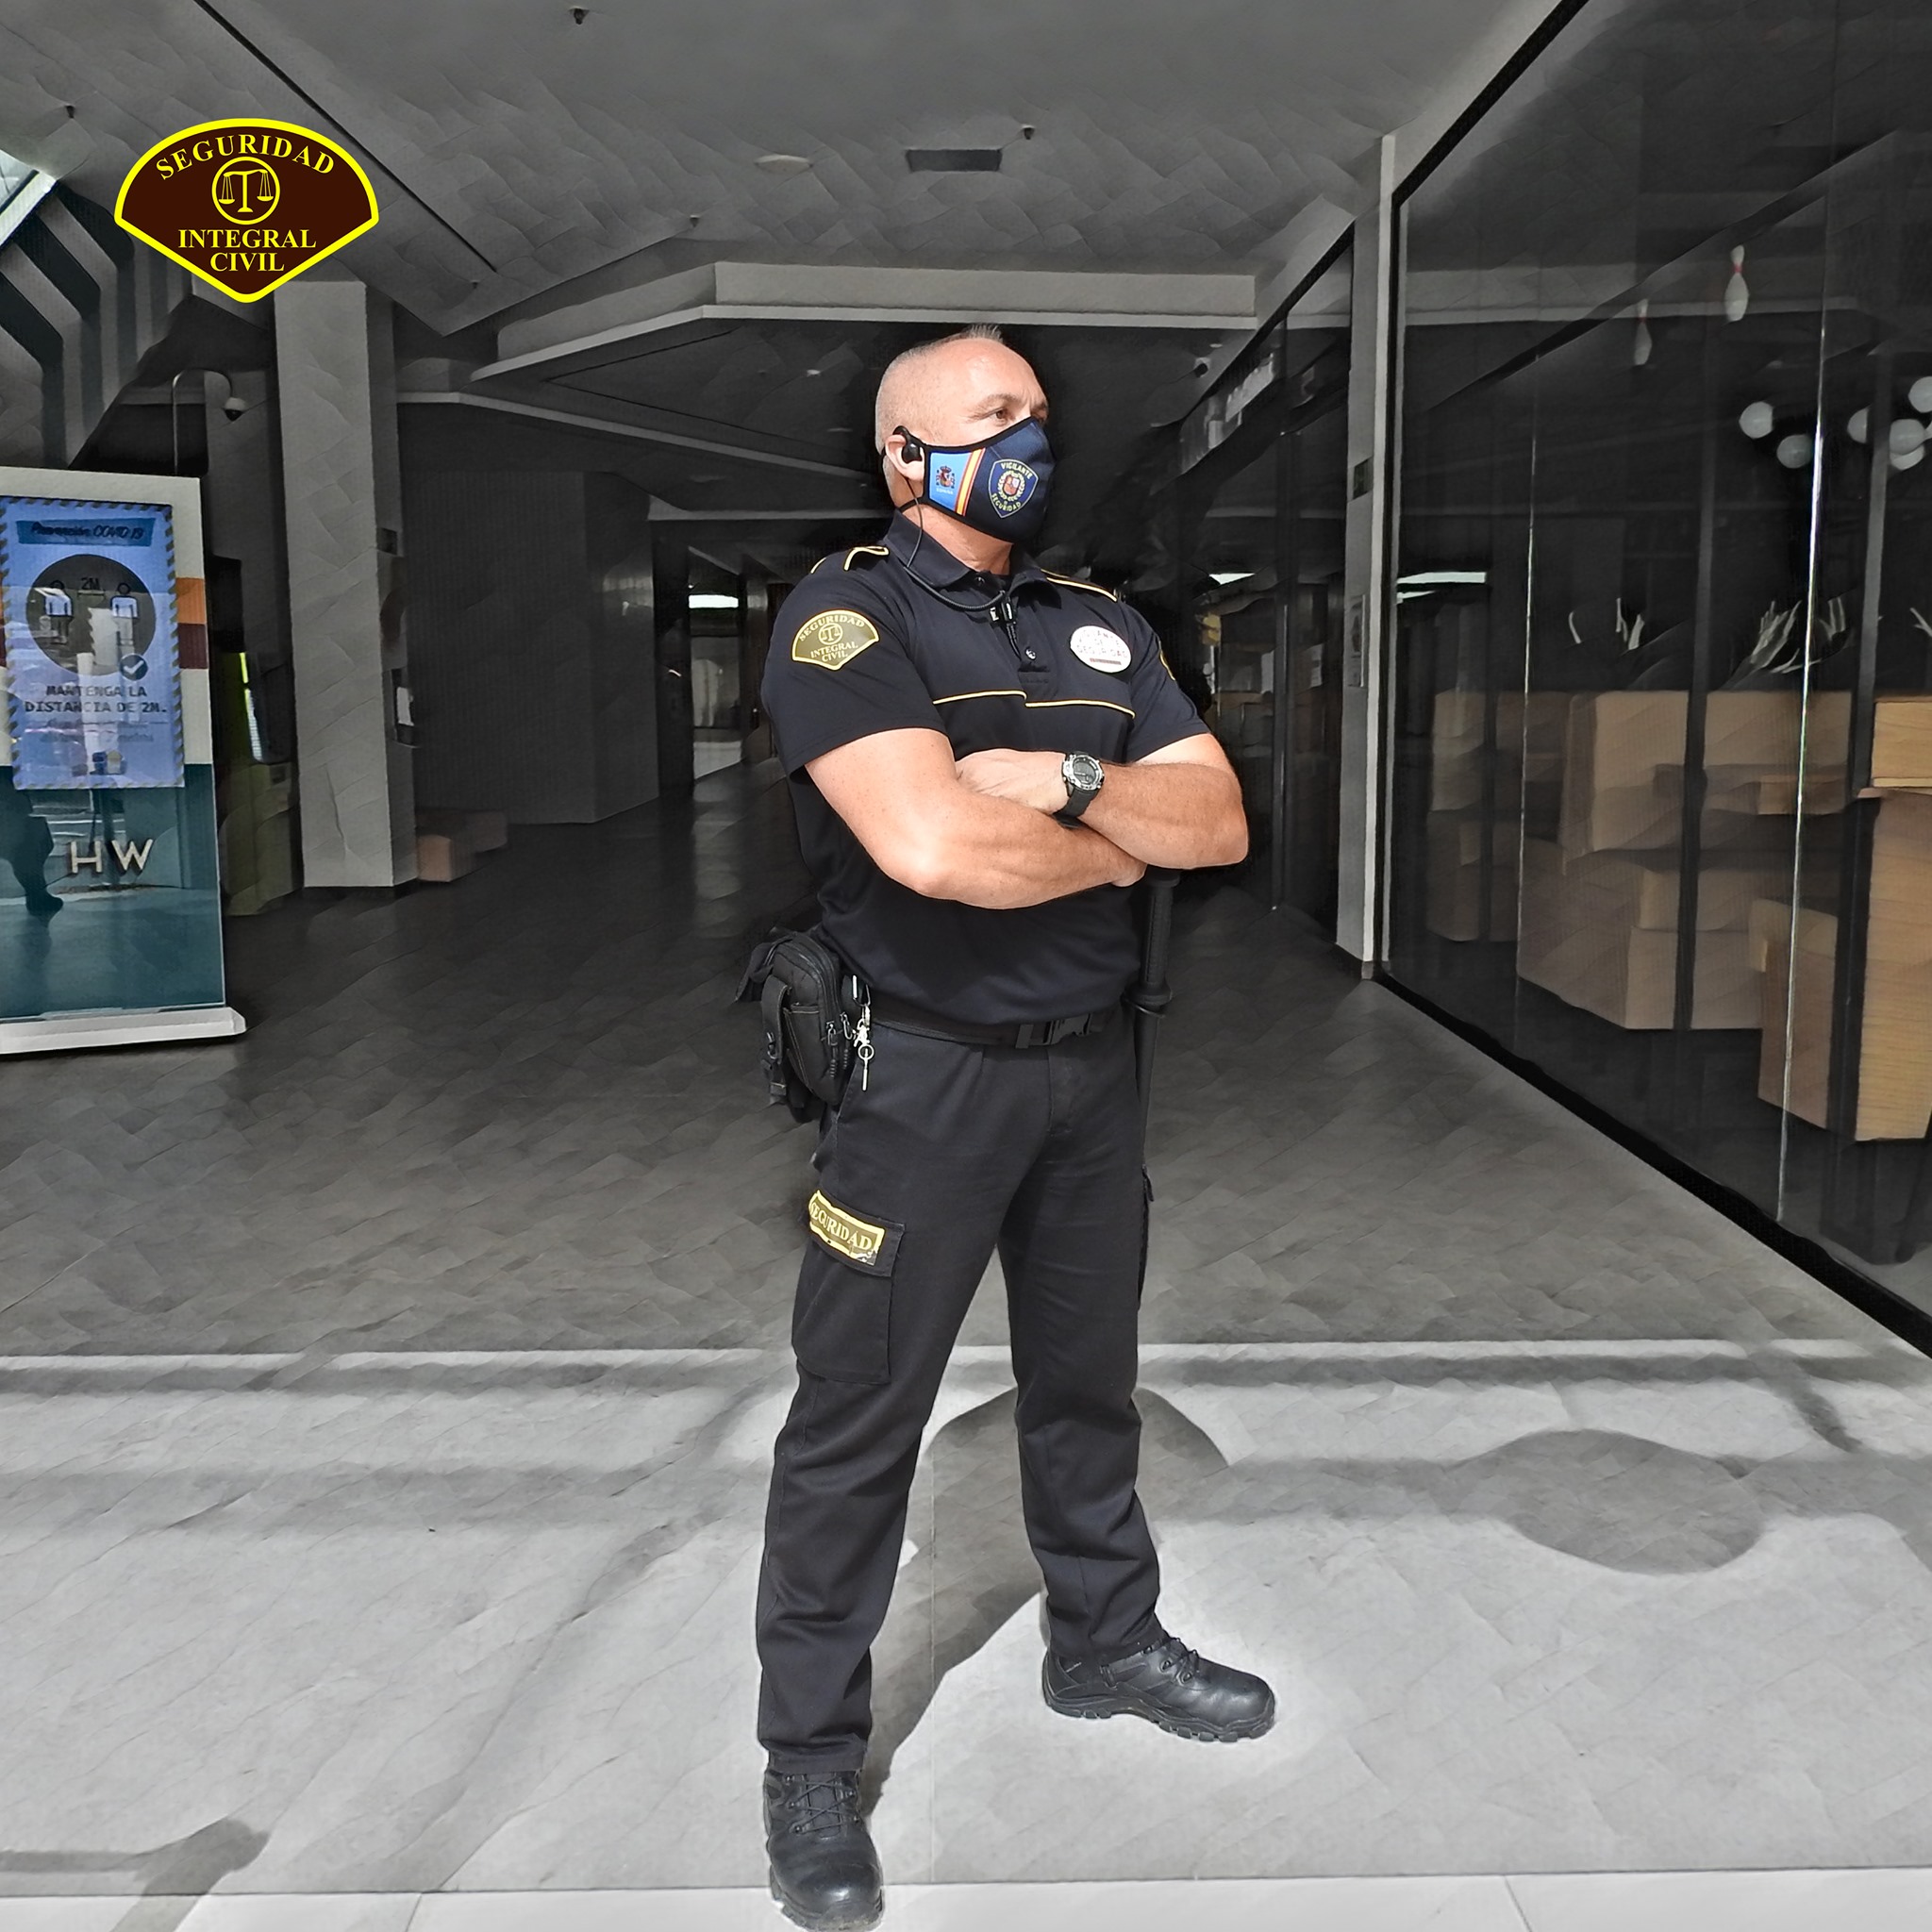 Vigilantes - Seguridad Civil Integral